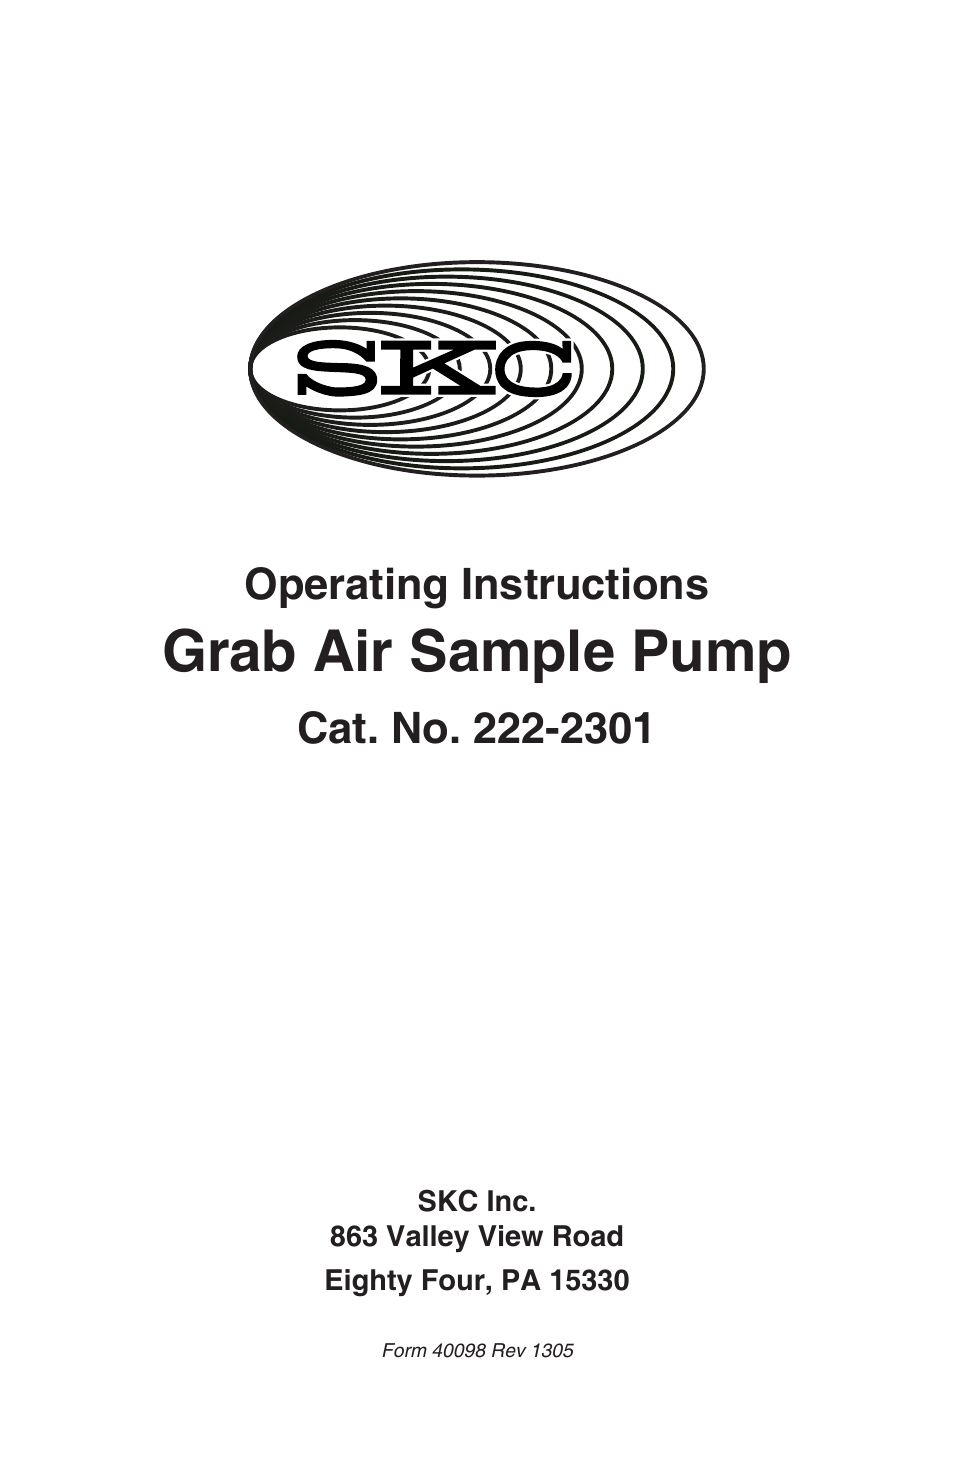 222-2301 Grab Air Sample Pump